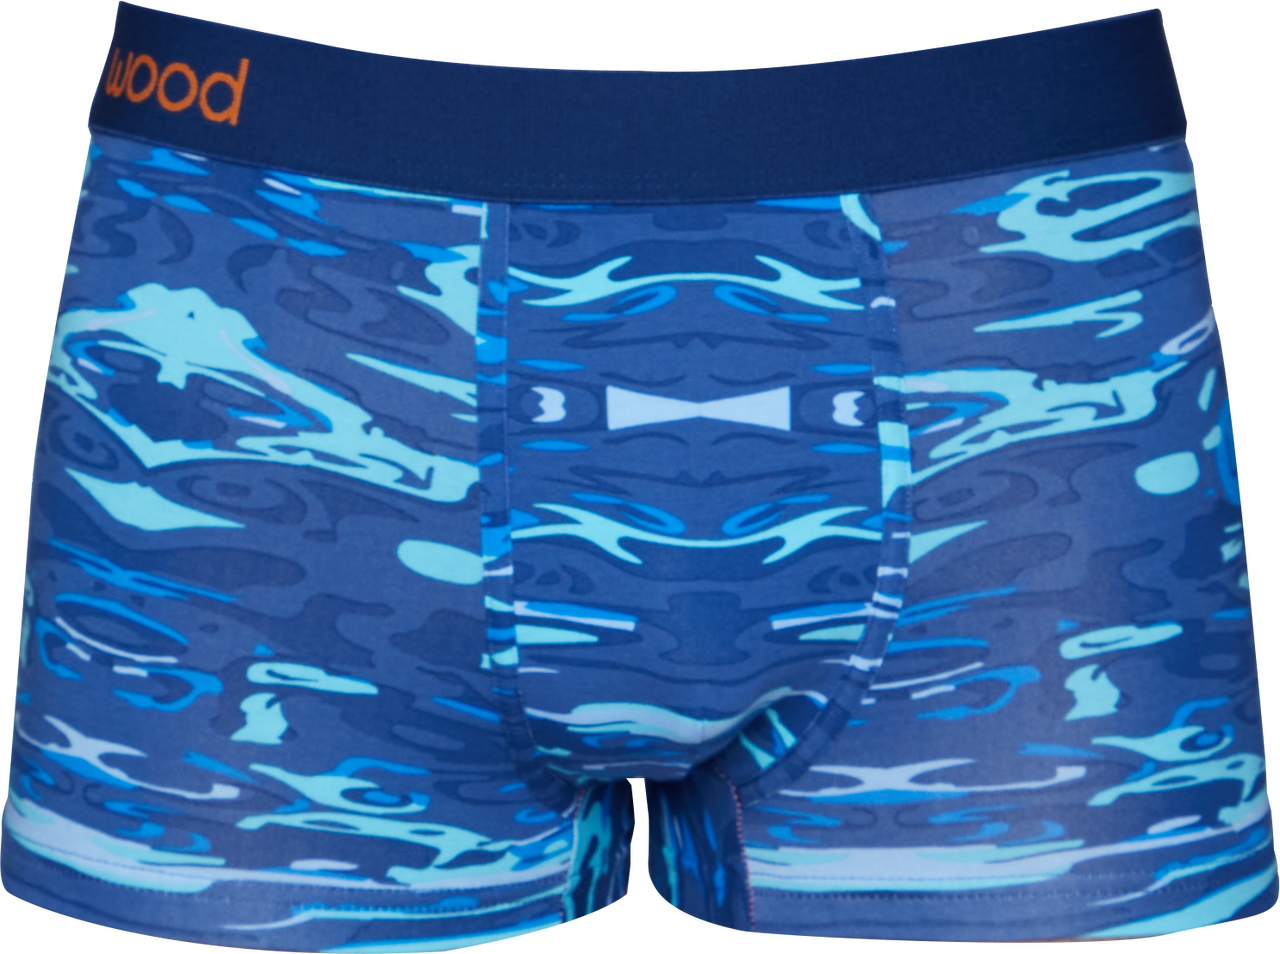 Trunk Style Briefs in Blue Liquid by Wood Underwear